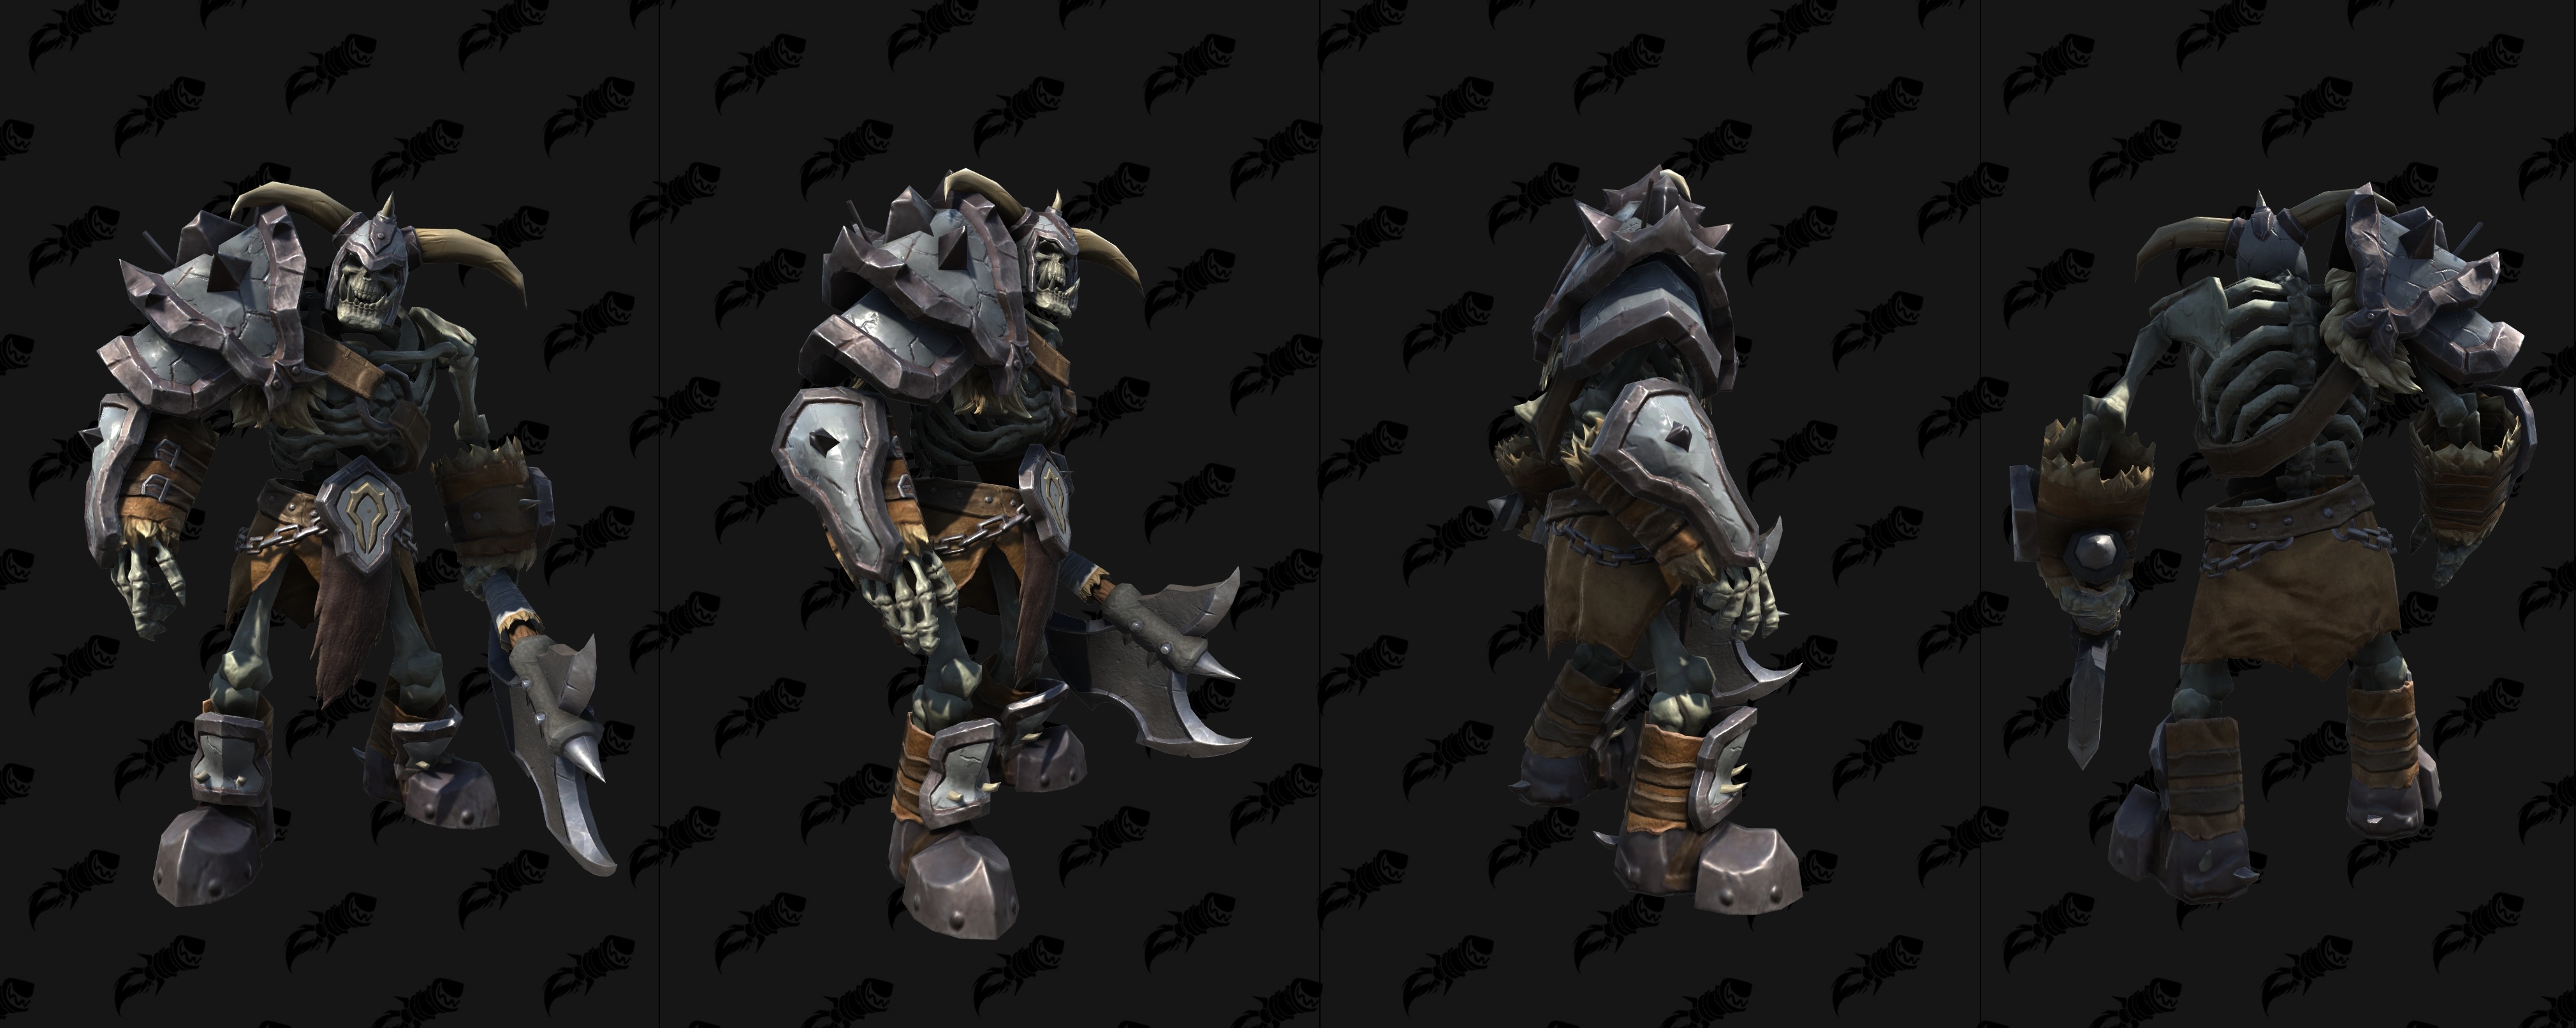 В сети опубликовали модели скелетов и зомби из Warcraft 3 ...
 Нужно Построить Зиккурат